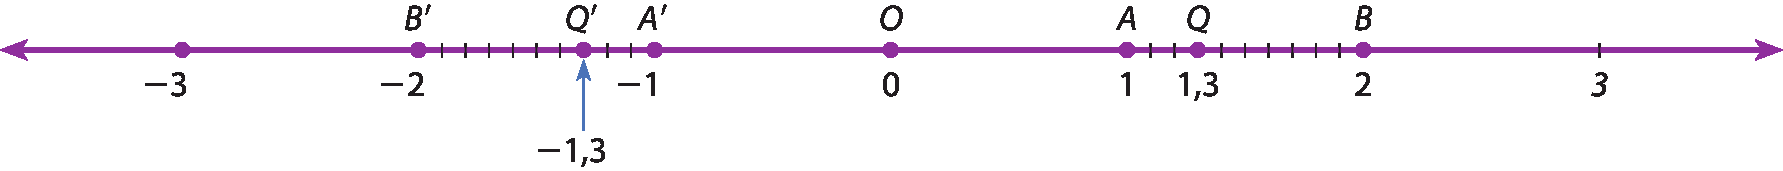 Ilustração. Reta numérica com os pontos: menos 3, B linha igual menos 2, Q linha igual menos 1 vírgula 3, A linha igual menos 1, O igual 0, A igual 1, Q igual 1 vírgula 3, B igual 2, 3. Os segmentos B linha A linha e A B estão divididos em 10 partes iguais.